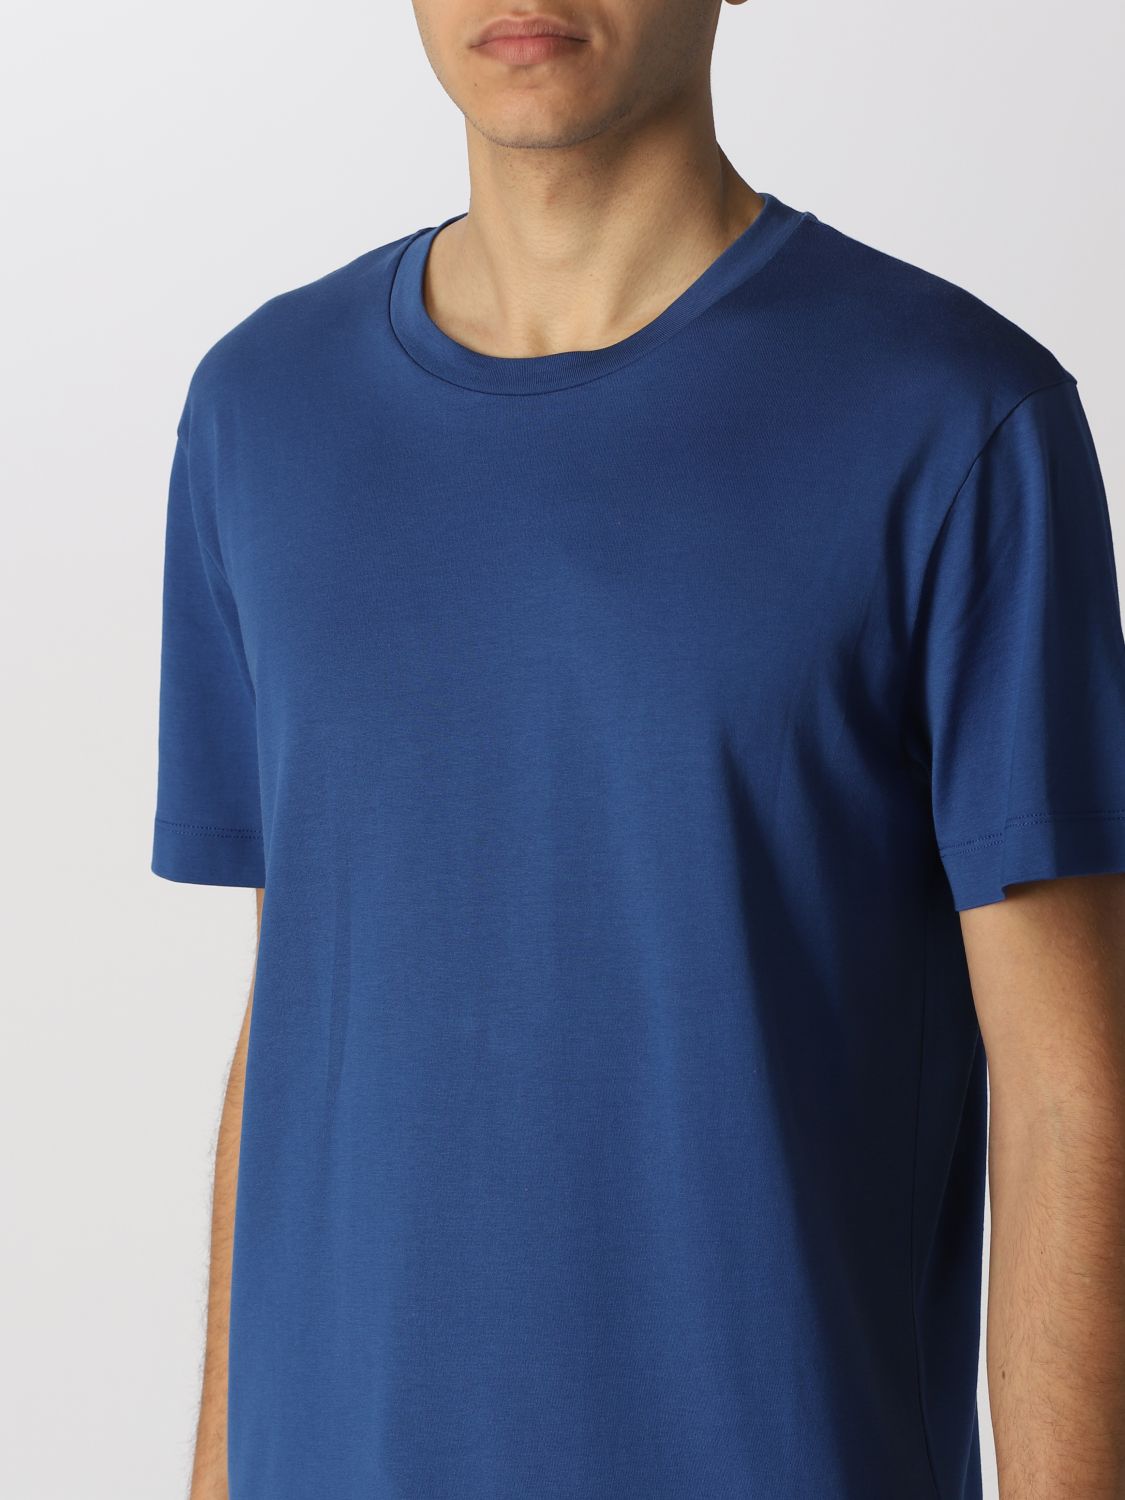 Camiseta Roberto Collina: Camiseta Roberto Collina para hombre azul oscuro 3